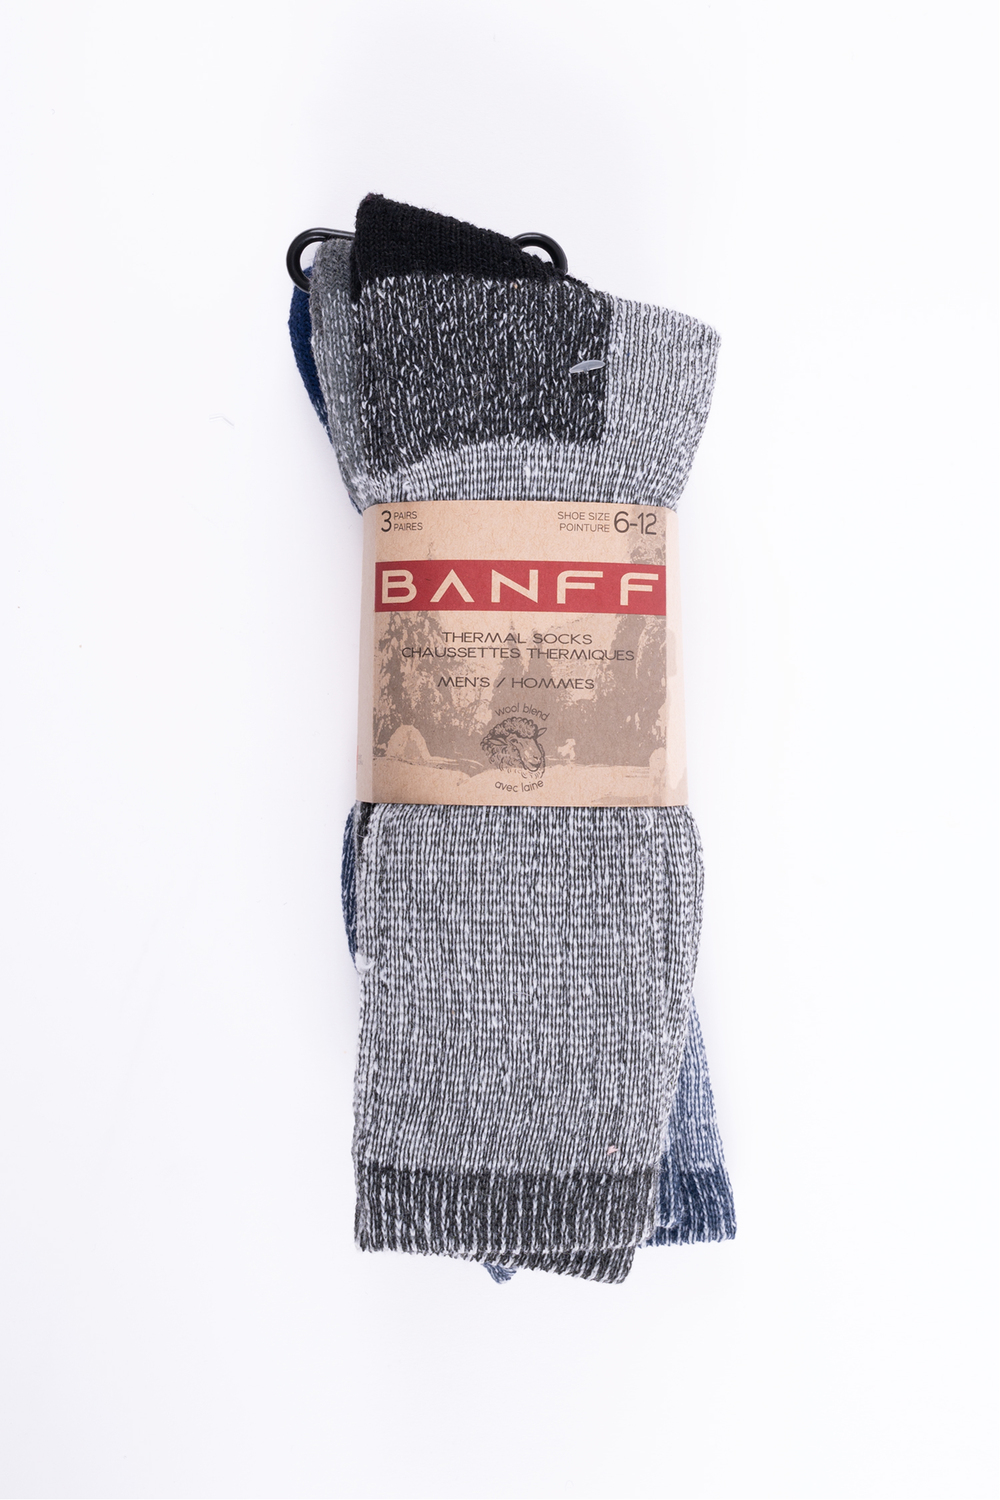 Banff - Chaussettes thermiques - 3 paires